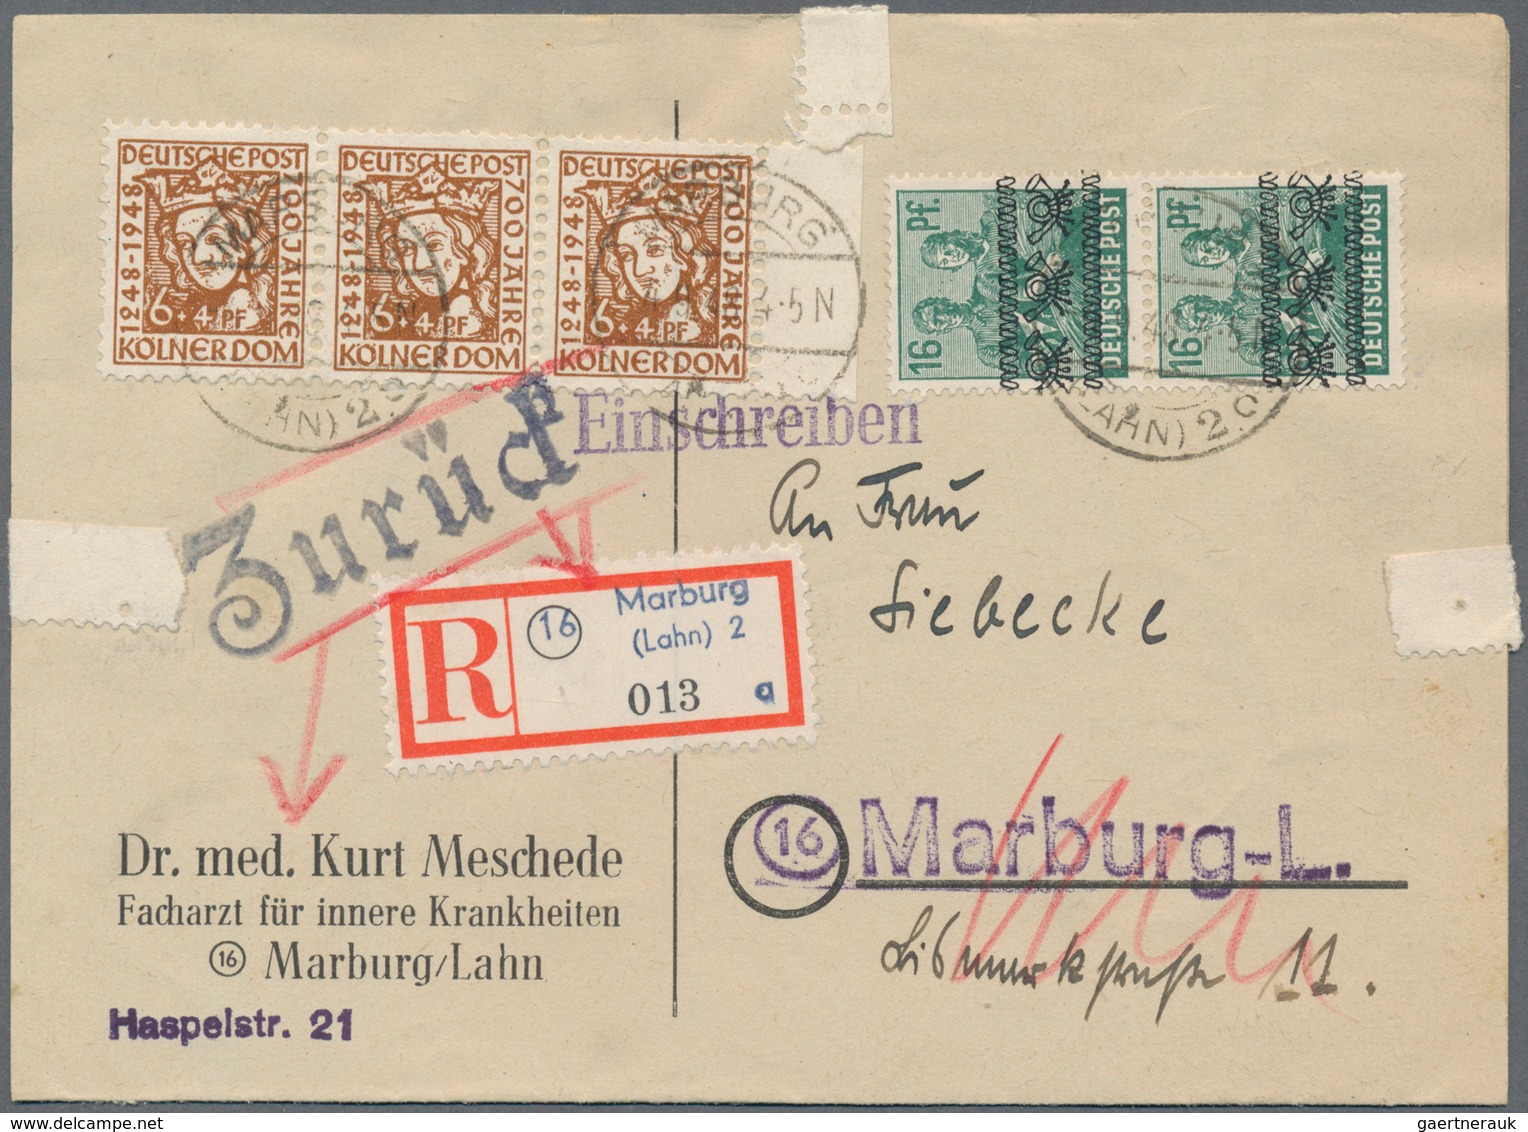 Deutschland: 1855/2000: umfangreicher Briefposten in 9 Ordnern. Der Hauptwert liegt beim Deutschen R